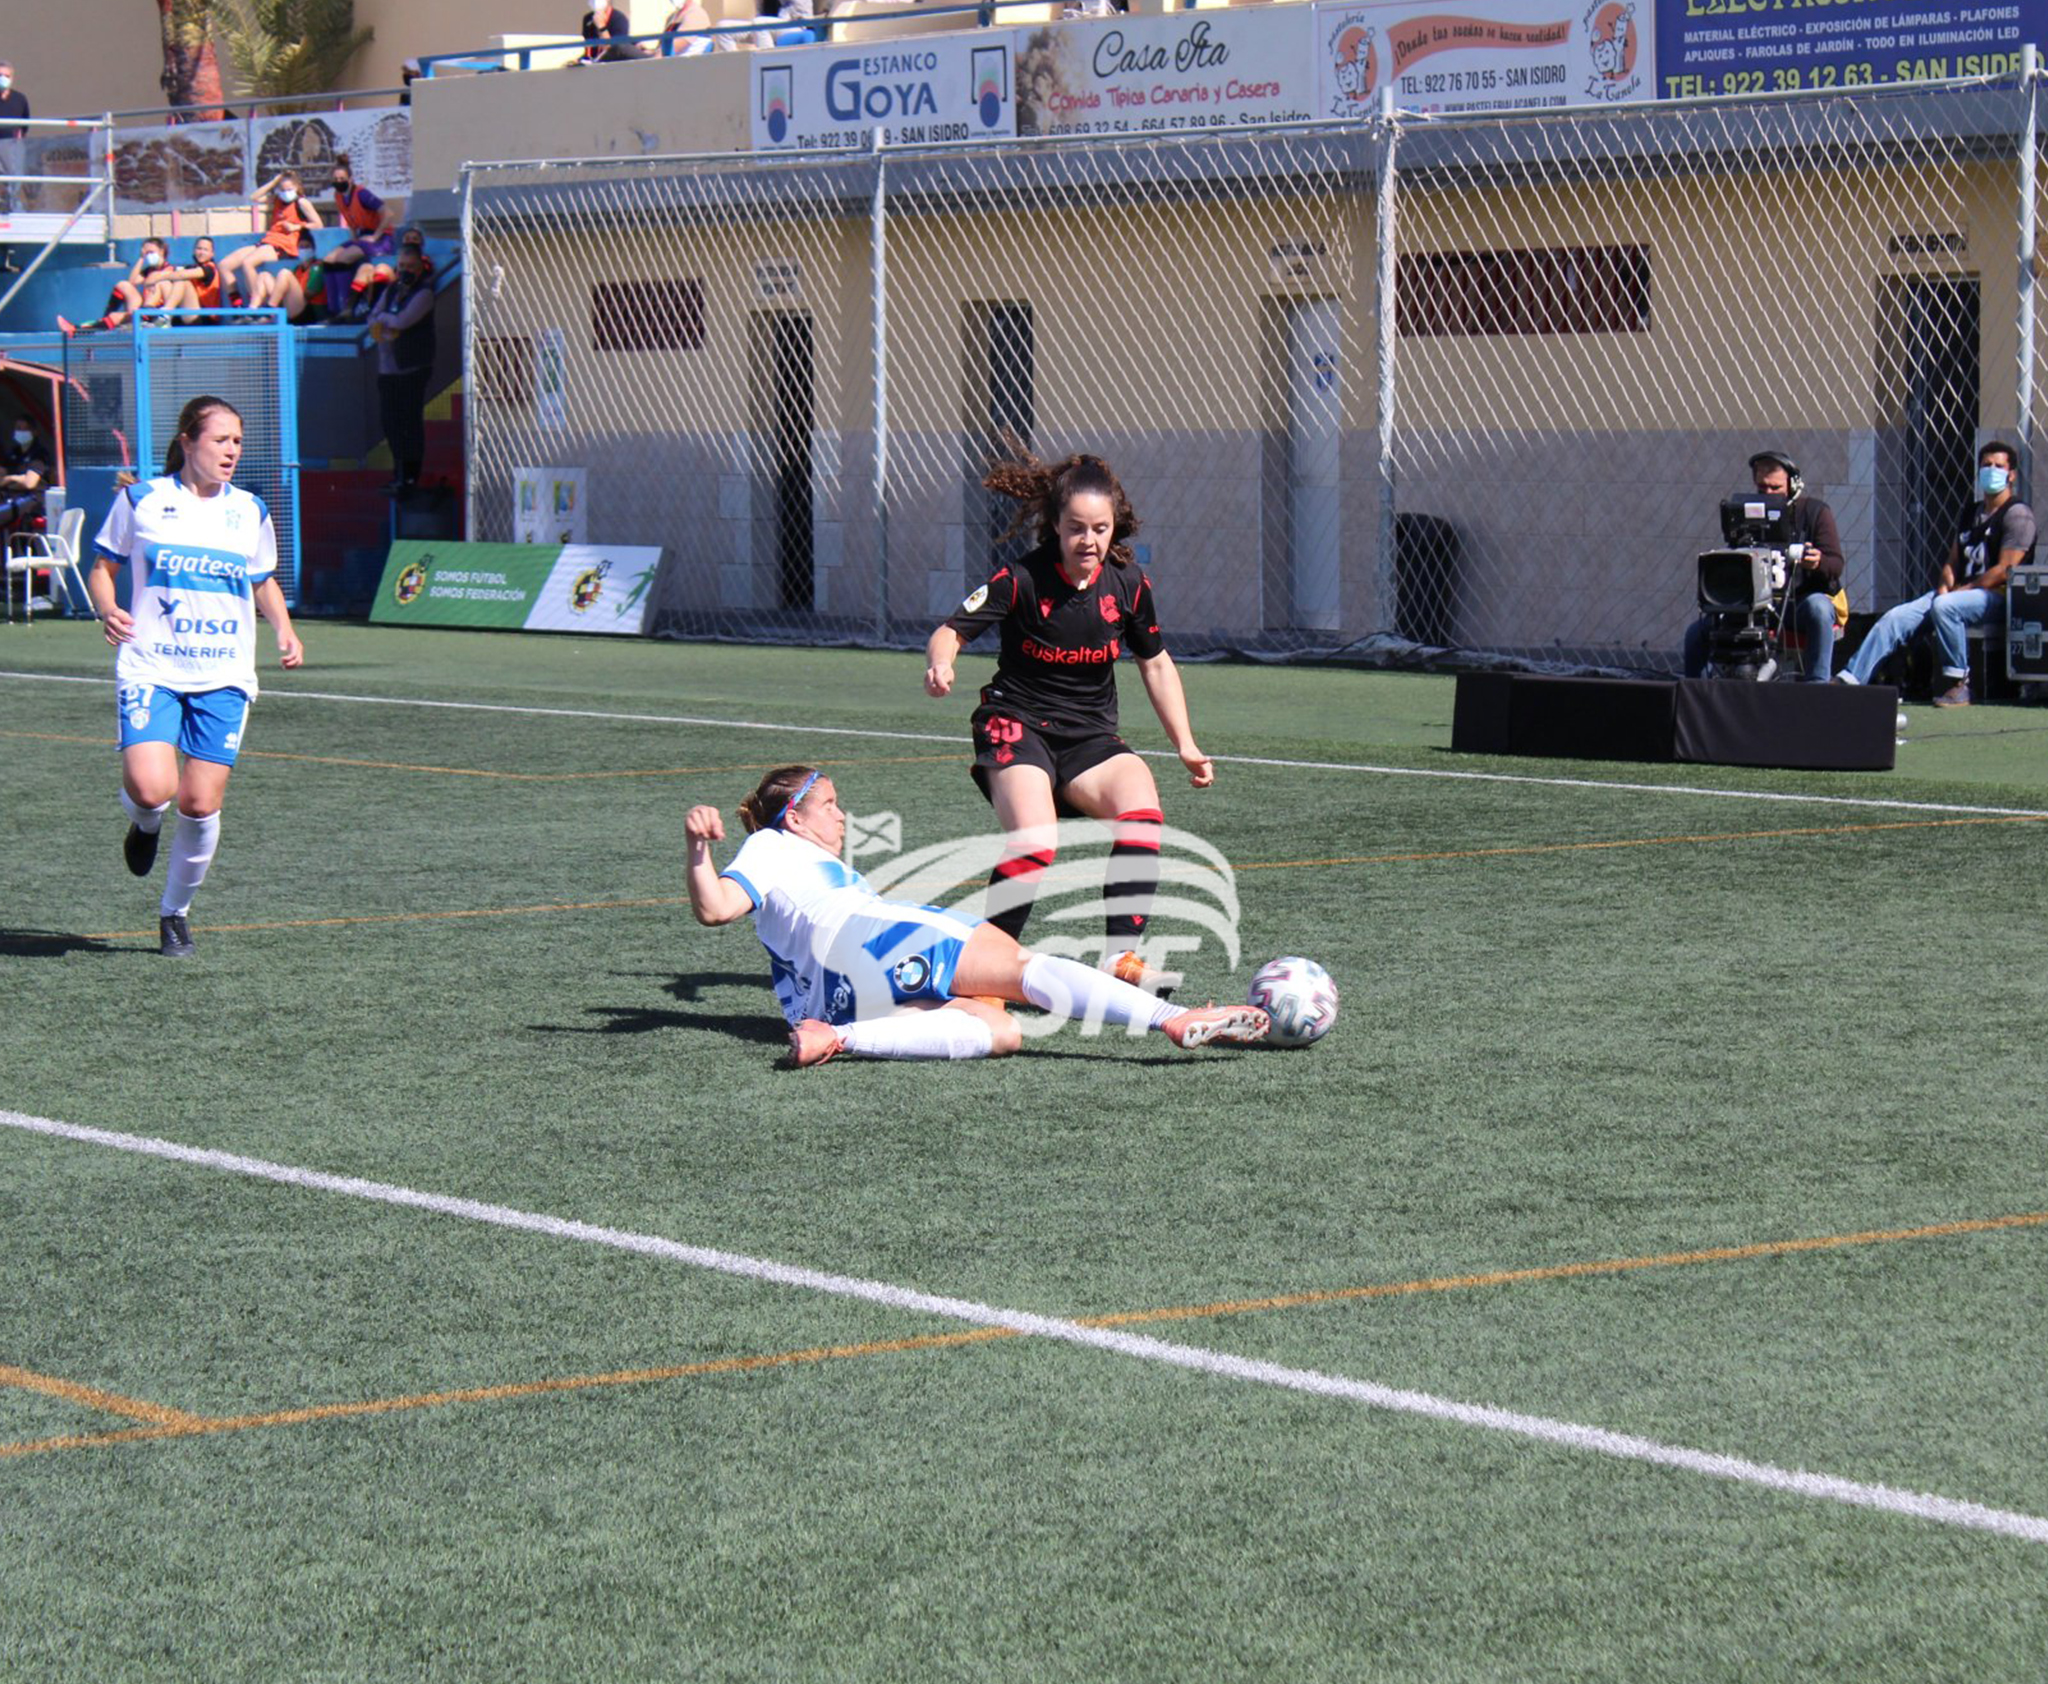 Crónica del UDG Tenerife 1-2 Real Sociedad: “Las guerreras ceden ante la efectividad donostiarra”